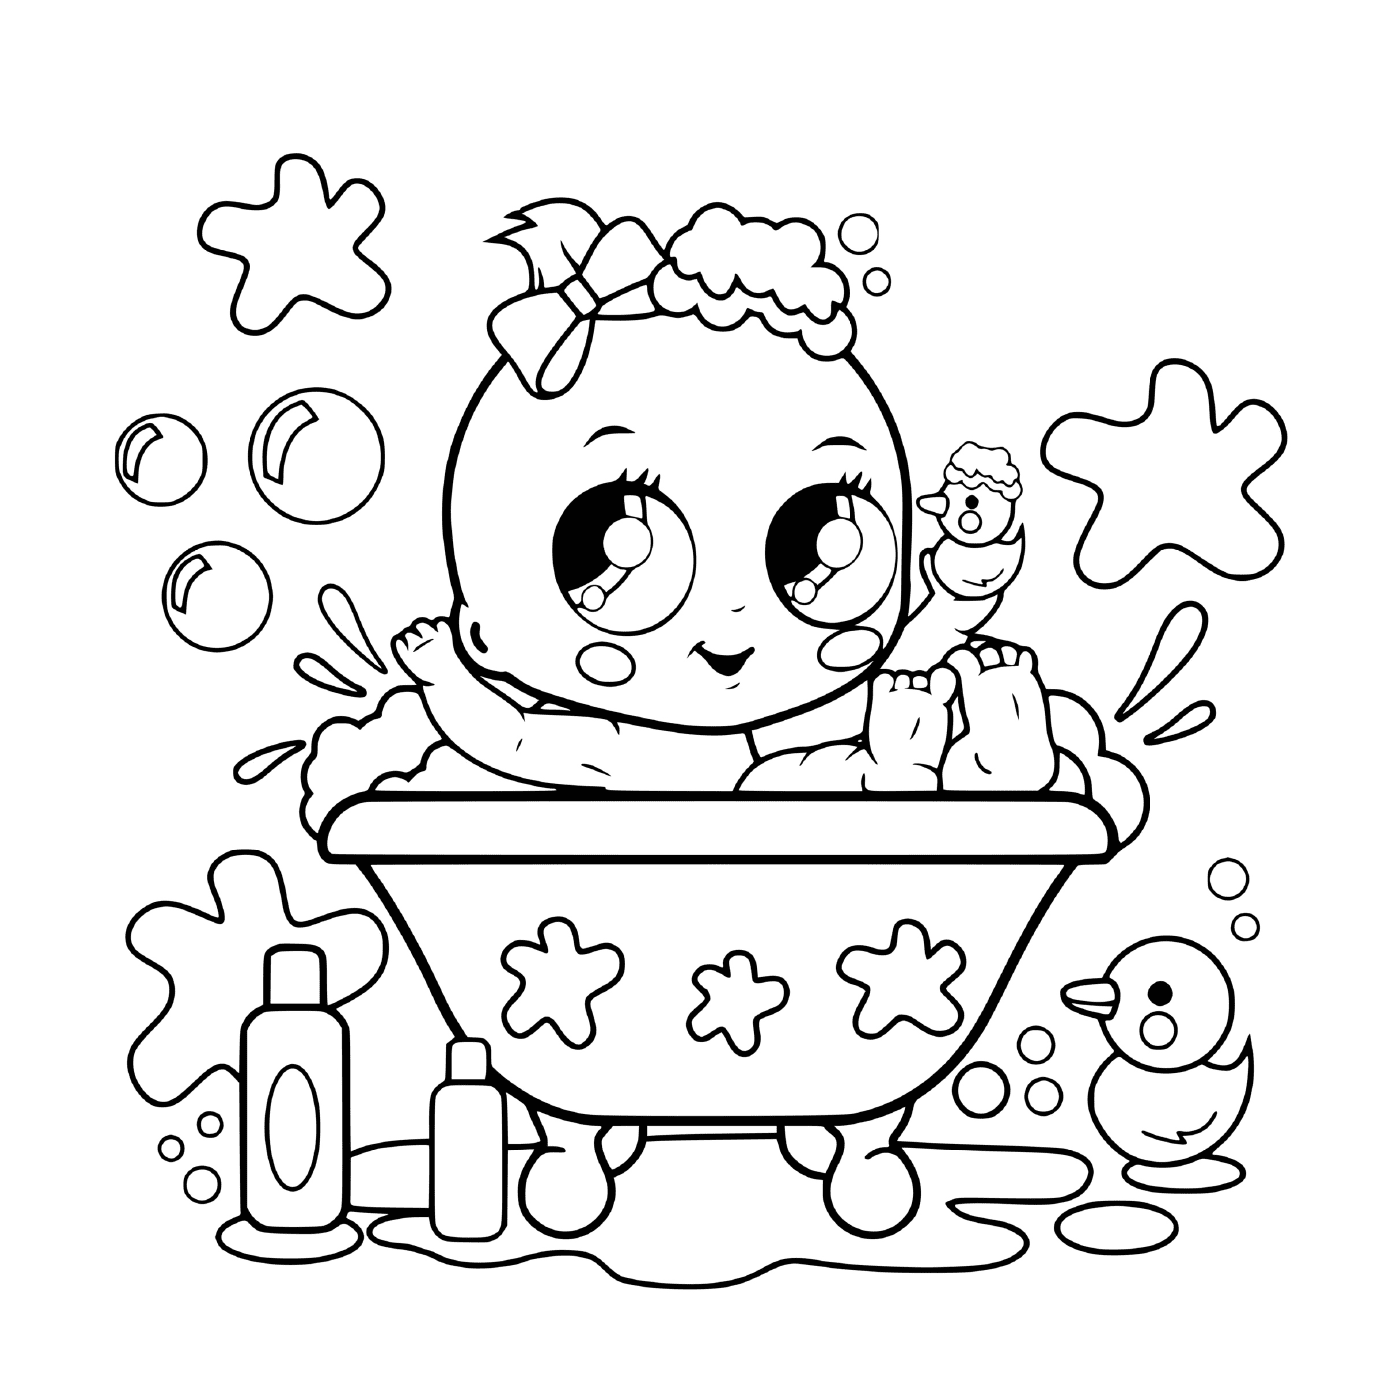  Ein Baby in einer Badewanne 